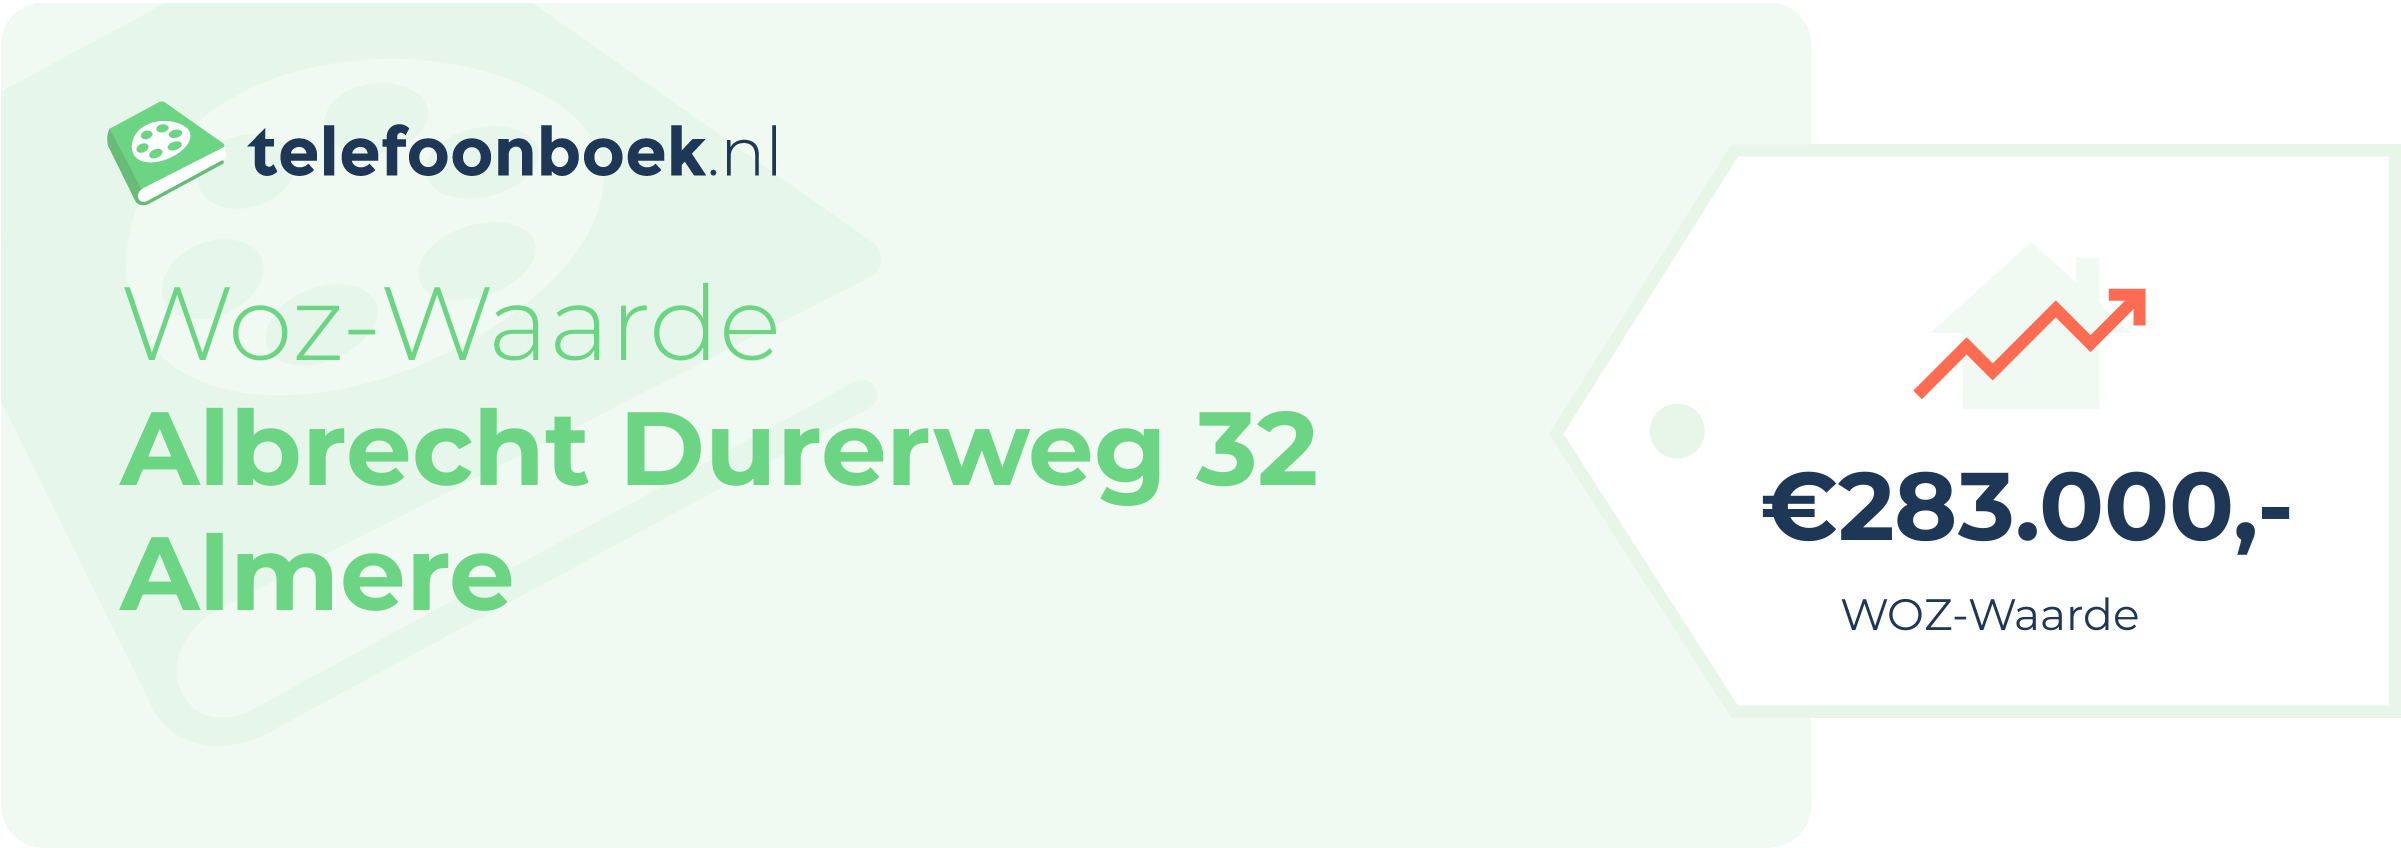 WOZ-waarde Albrecht Durerweg 32 Almere